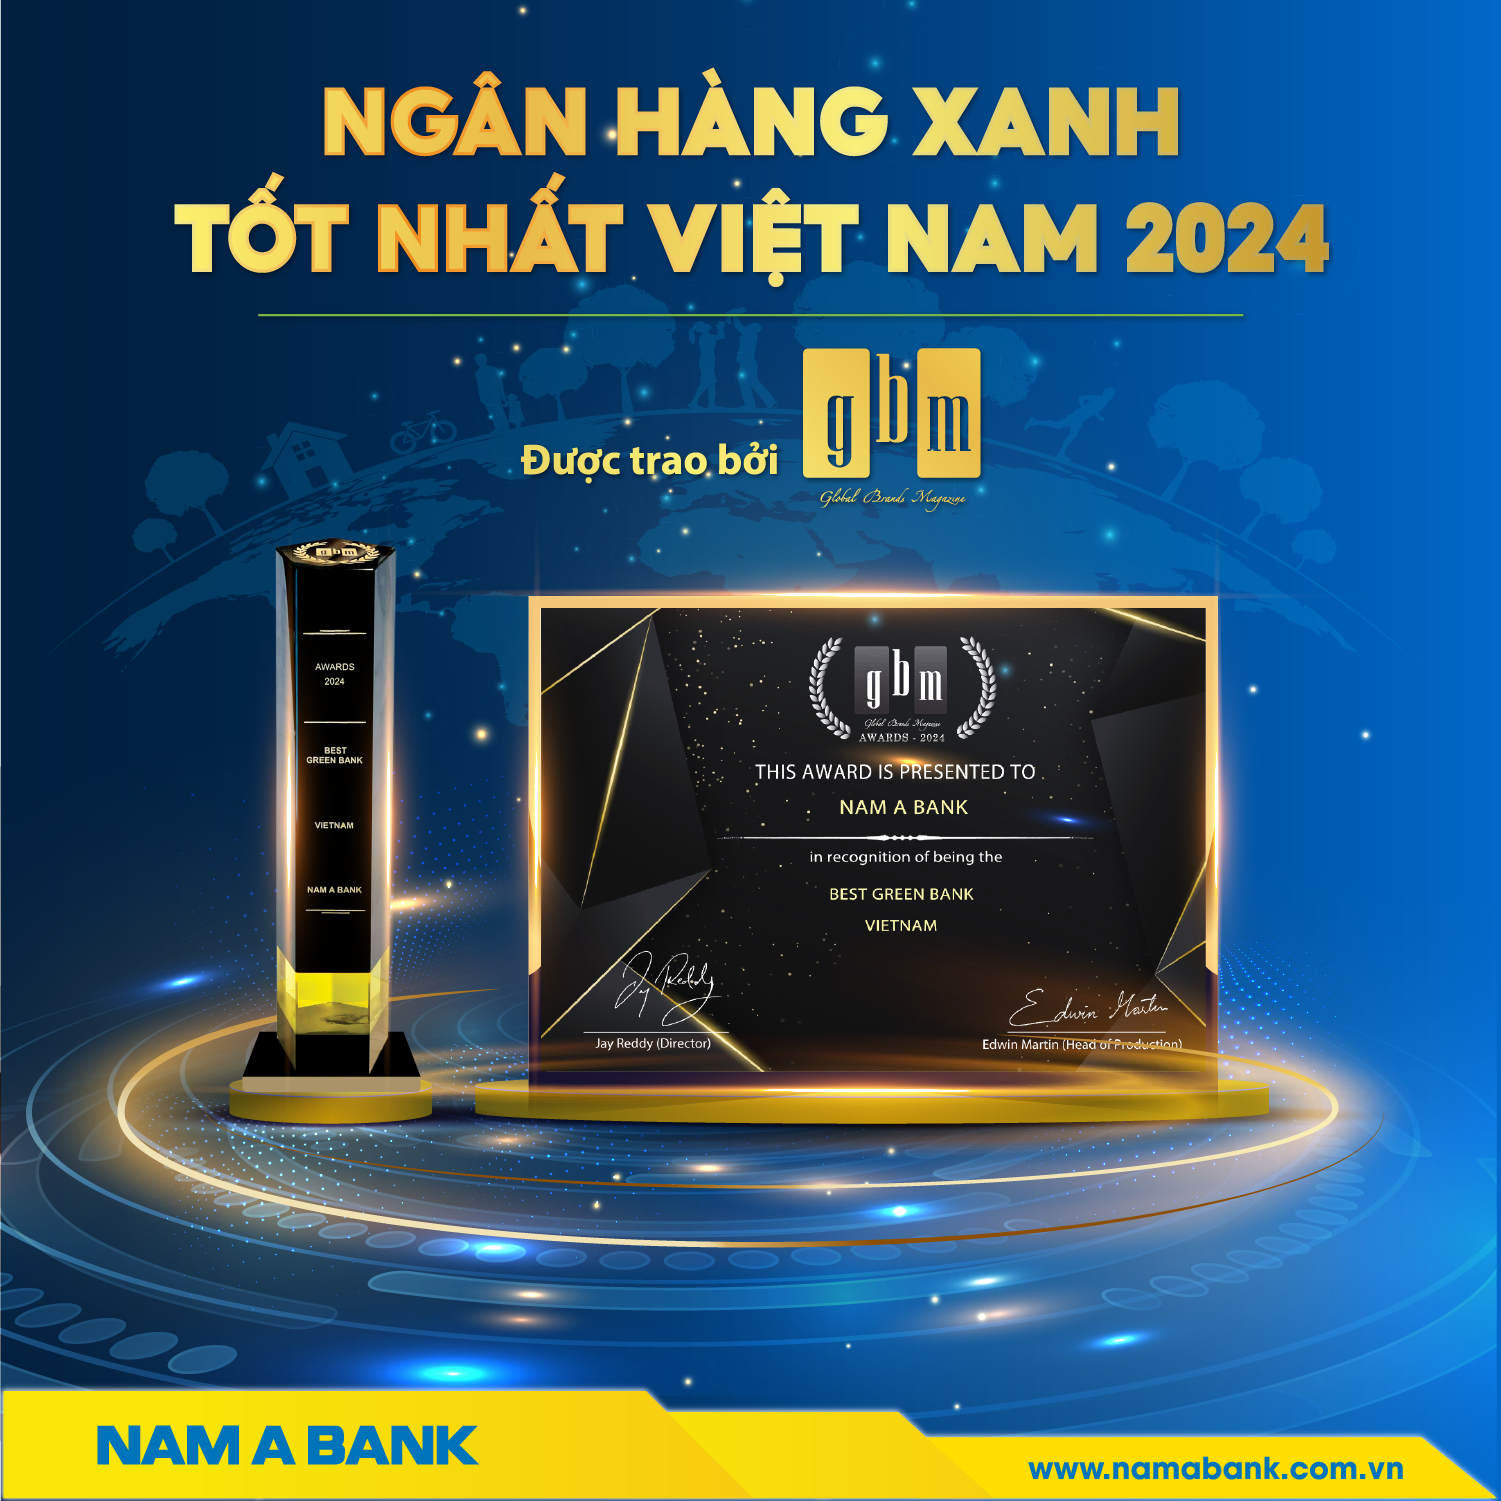 Ngân hàng xanh tốt nhất Việt Nam 2024